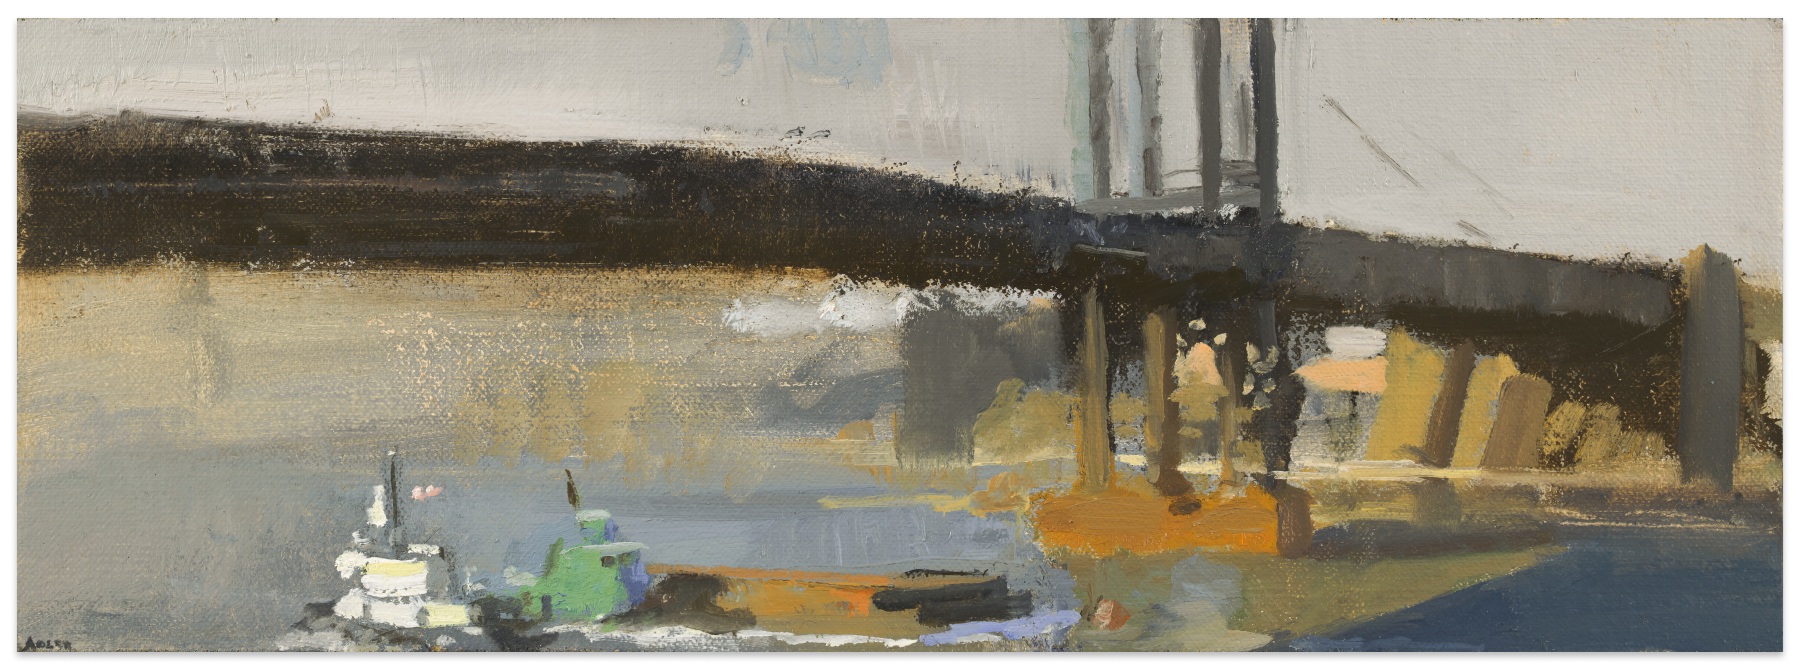 Laura Adler Under the Bridge, Two Tugs, 2013 oil on linen 5 x 14 in.